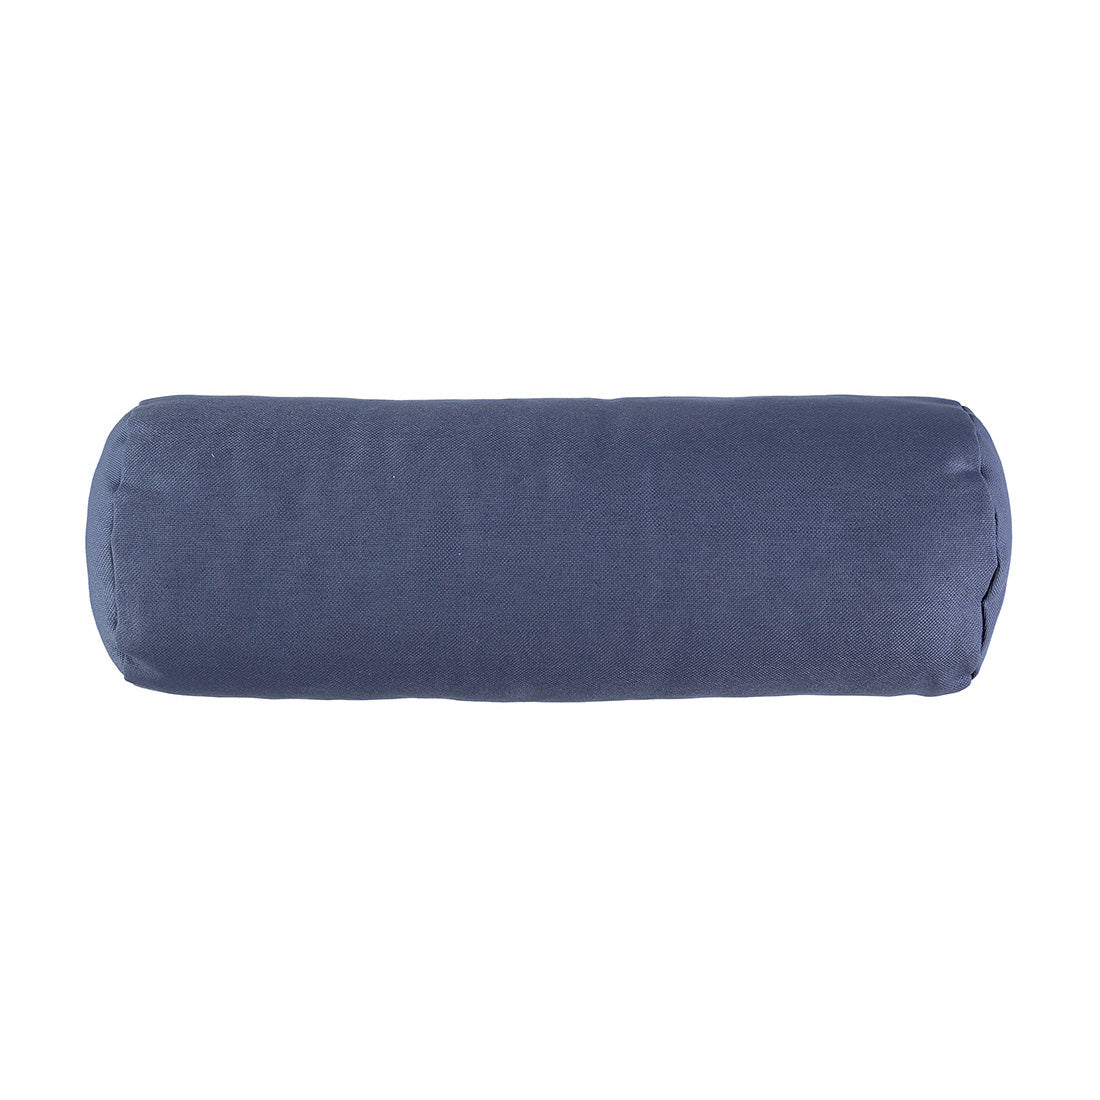 nobodinoz-sinbad-cushion-aegean-blue- (1)